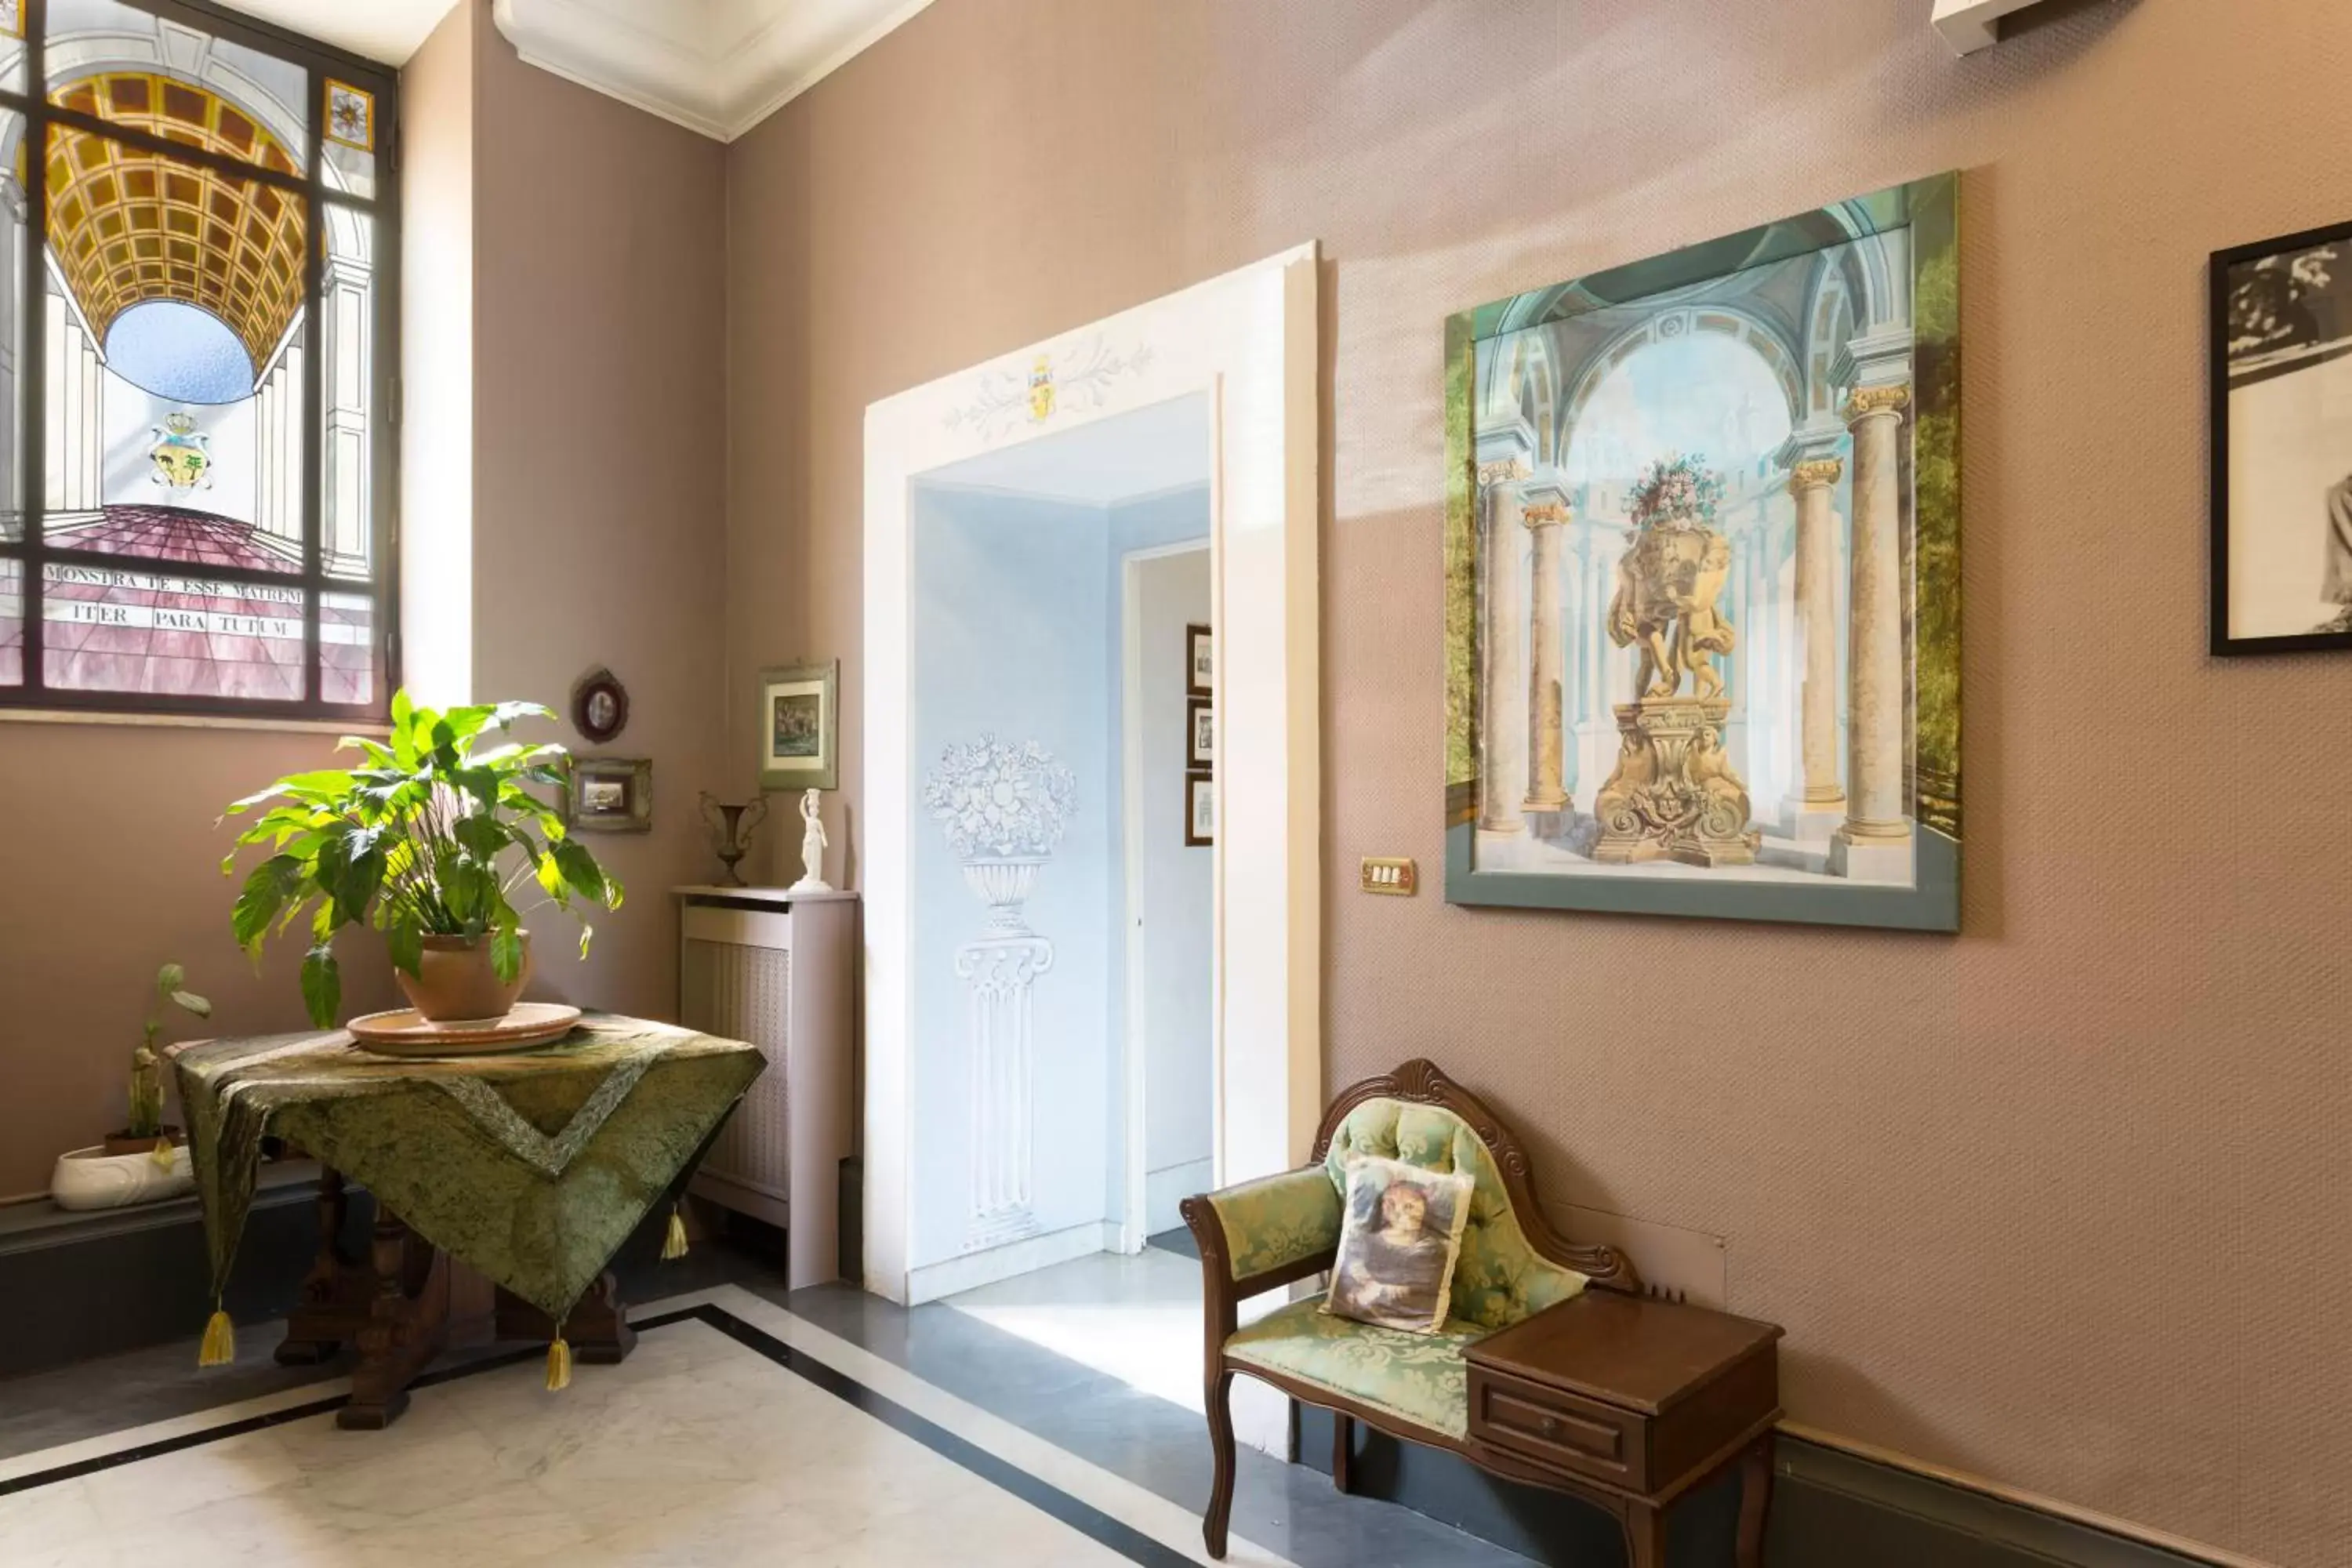 Lobby or reception, Lobby/Reception in Hotel Residenza In Farnese